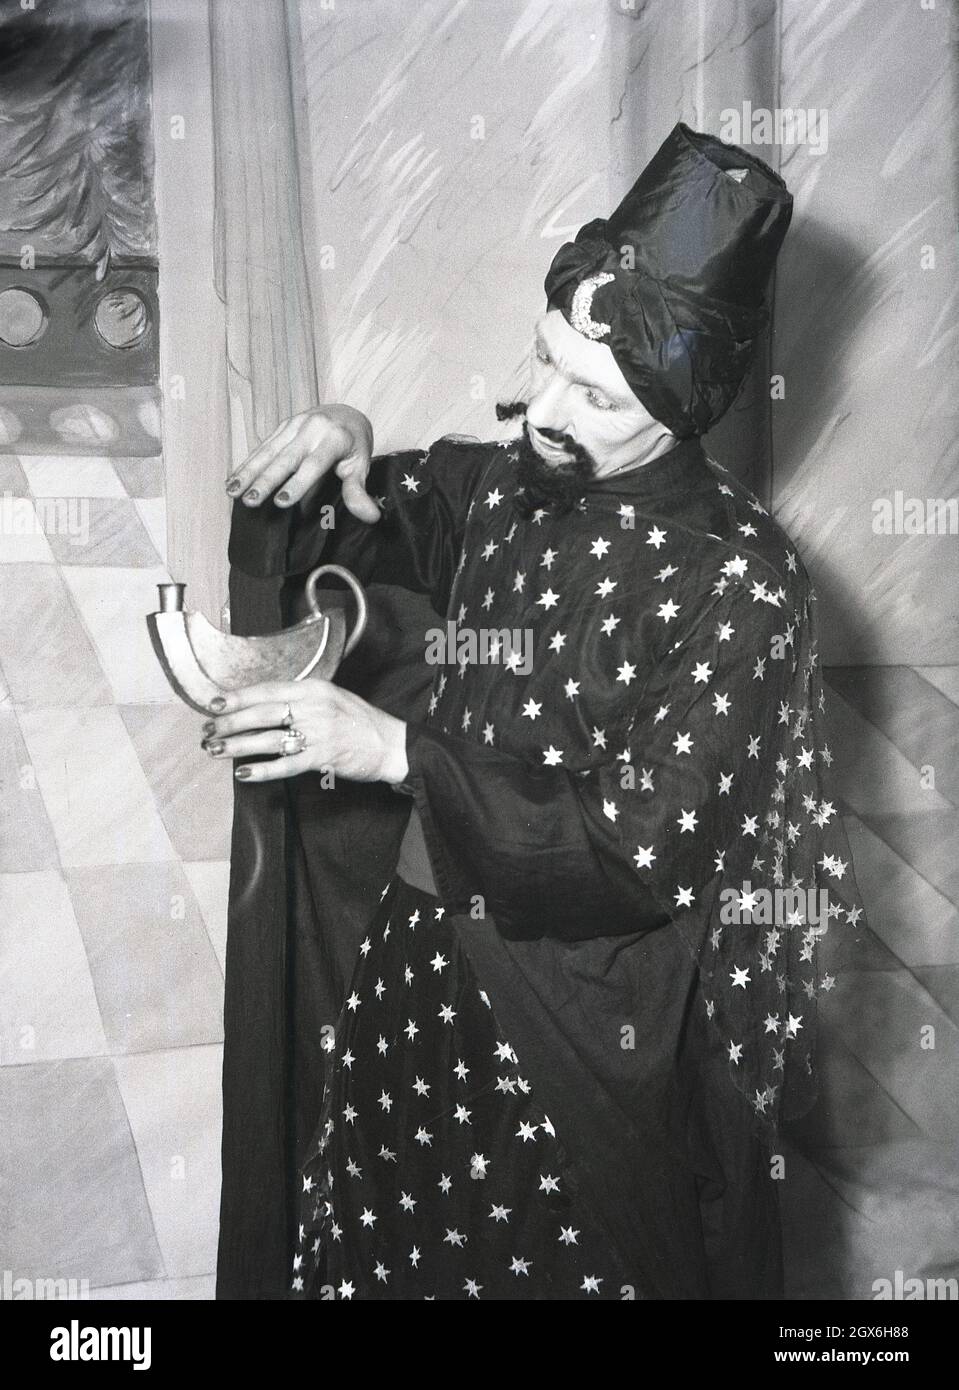 1957, historisch, ein männlicher Schauspieler auf einer Bühne in Kostümen, der den Genie im Stück Aladdin spielt, basierend auf einer Volksgeschichte aus dem Nahen Osten über den Sohn einer armen Witwe in china, die zum Besitzer einer magischen Lampe wird, England, Großbritannien. Stockfoto